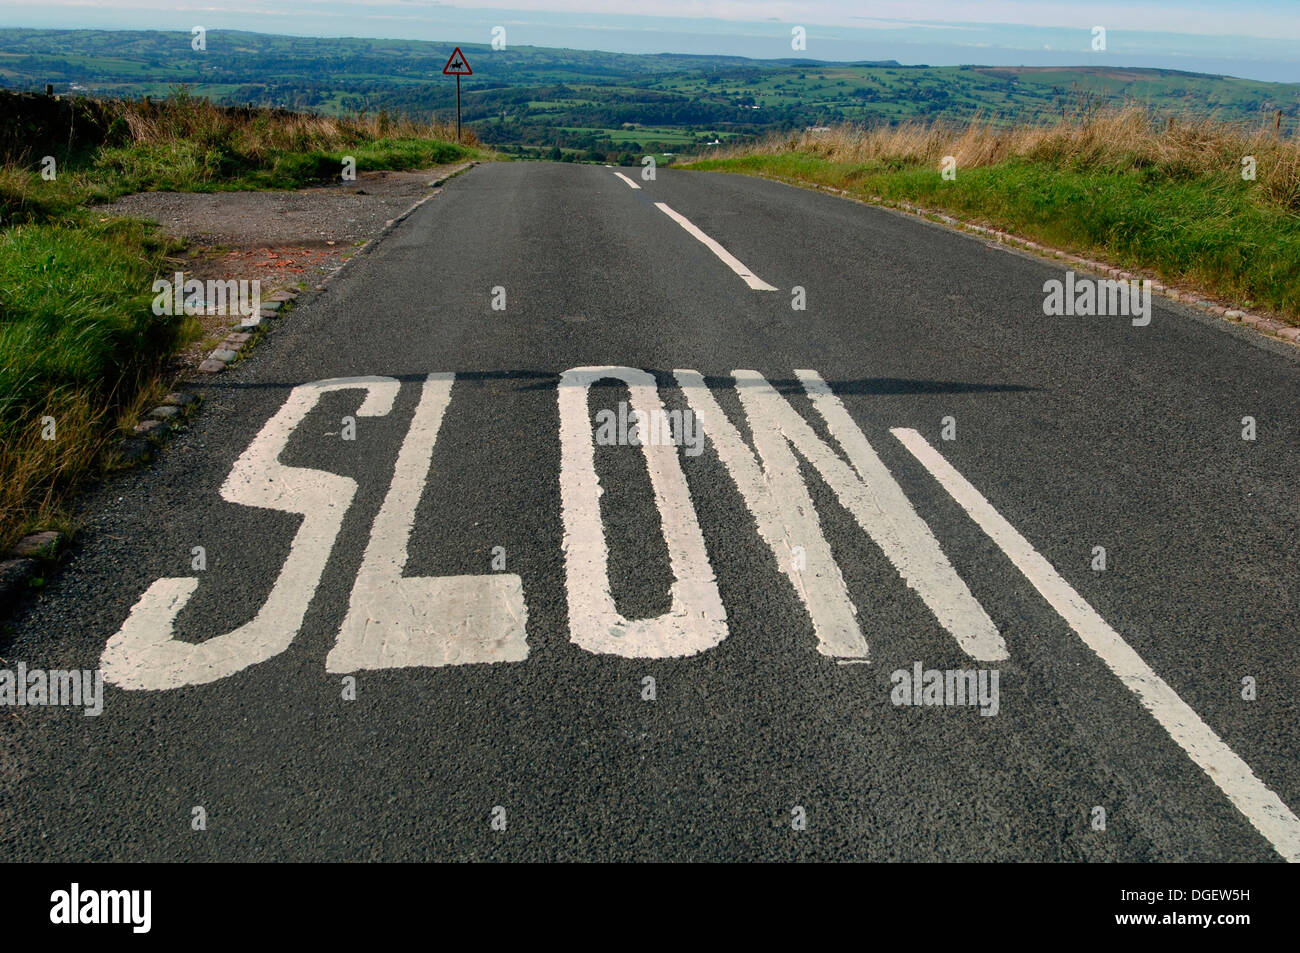 Signe lent sur une route de campagne dans le Staffordshire Moorlands Banque D'Images